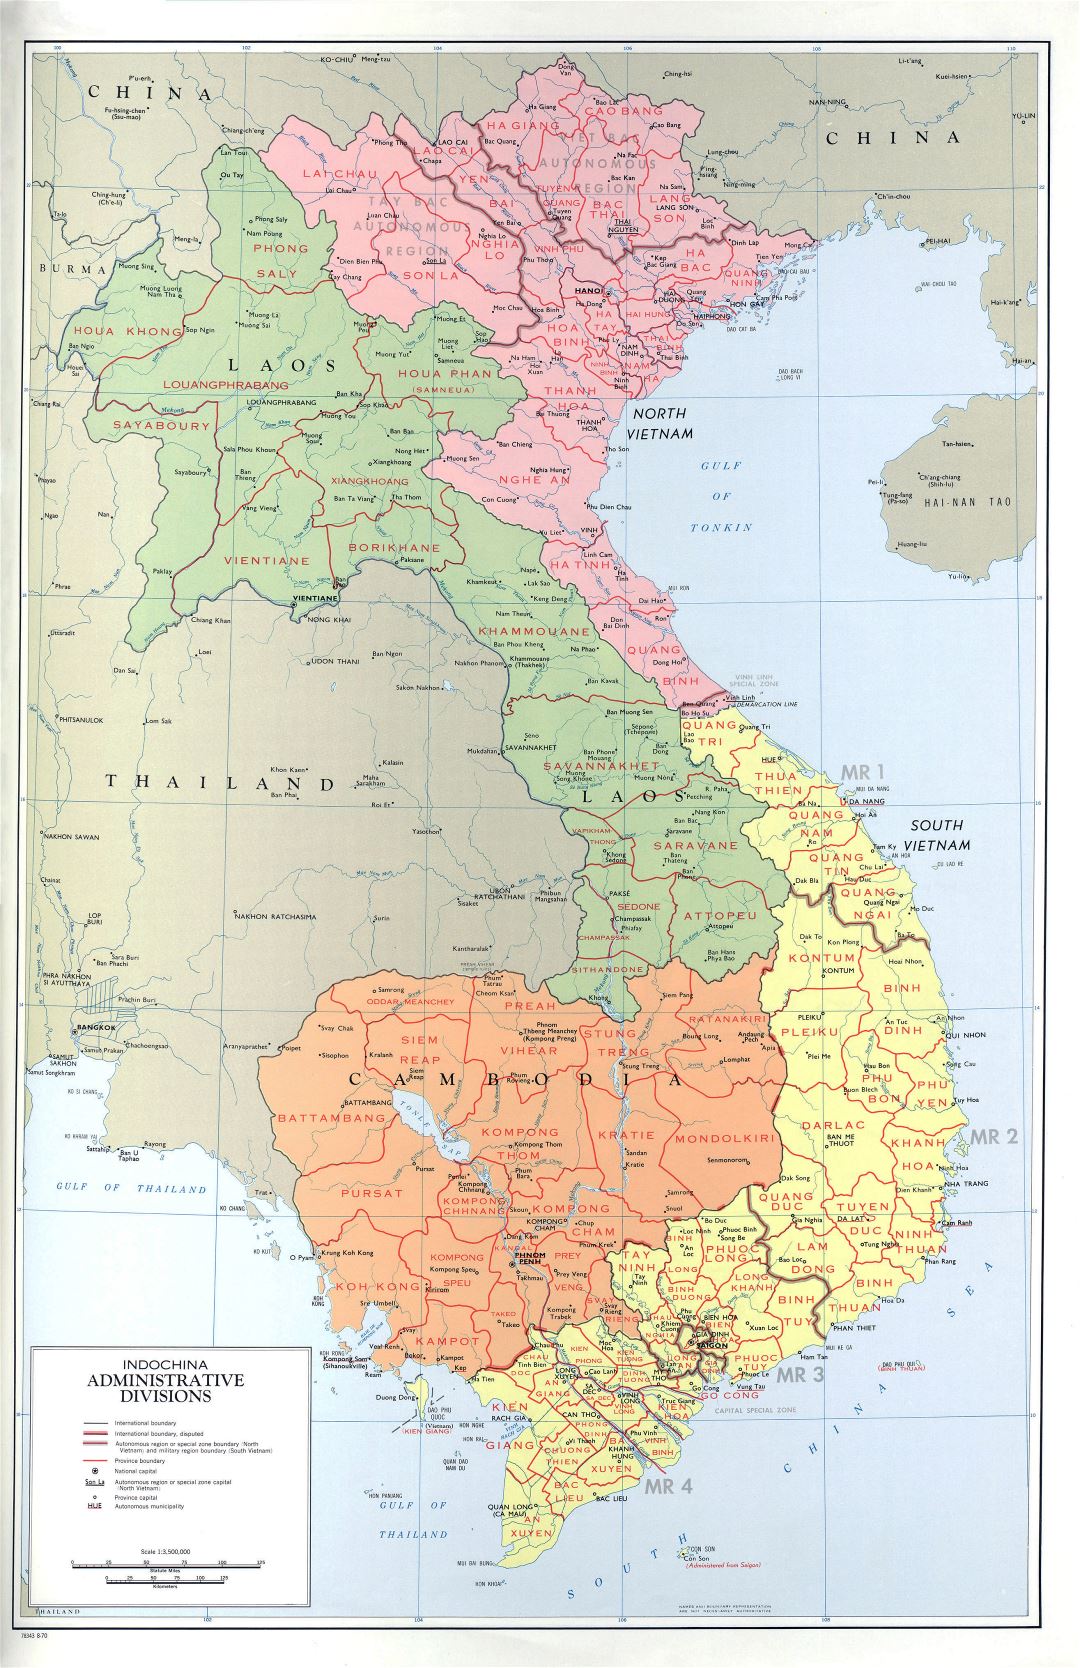 Grande detallado mapa de administrativas divisiones de Indochina - 1970